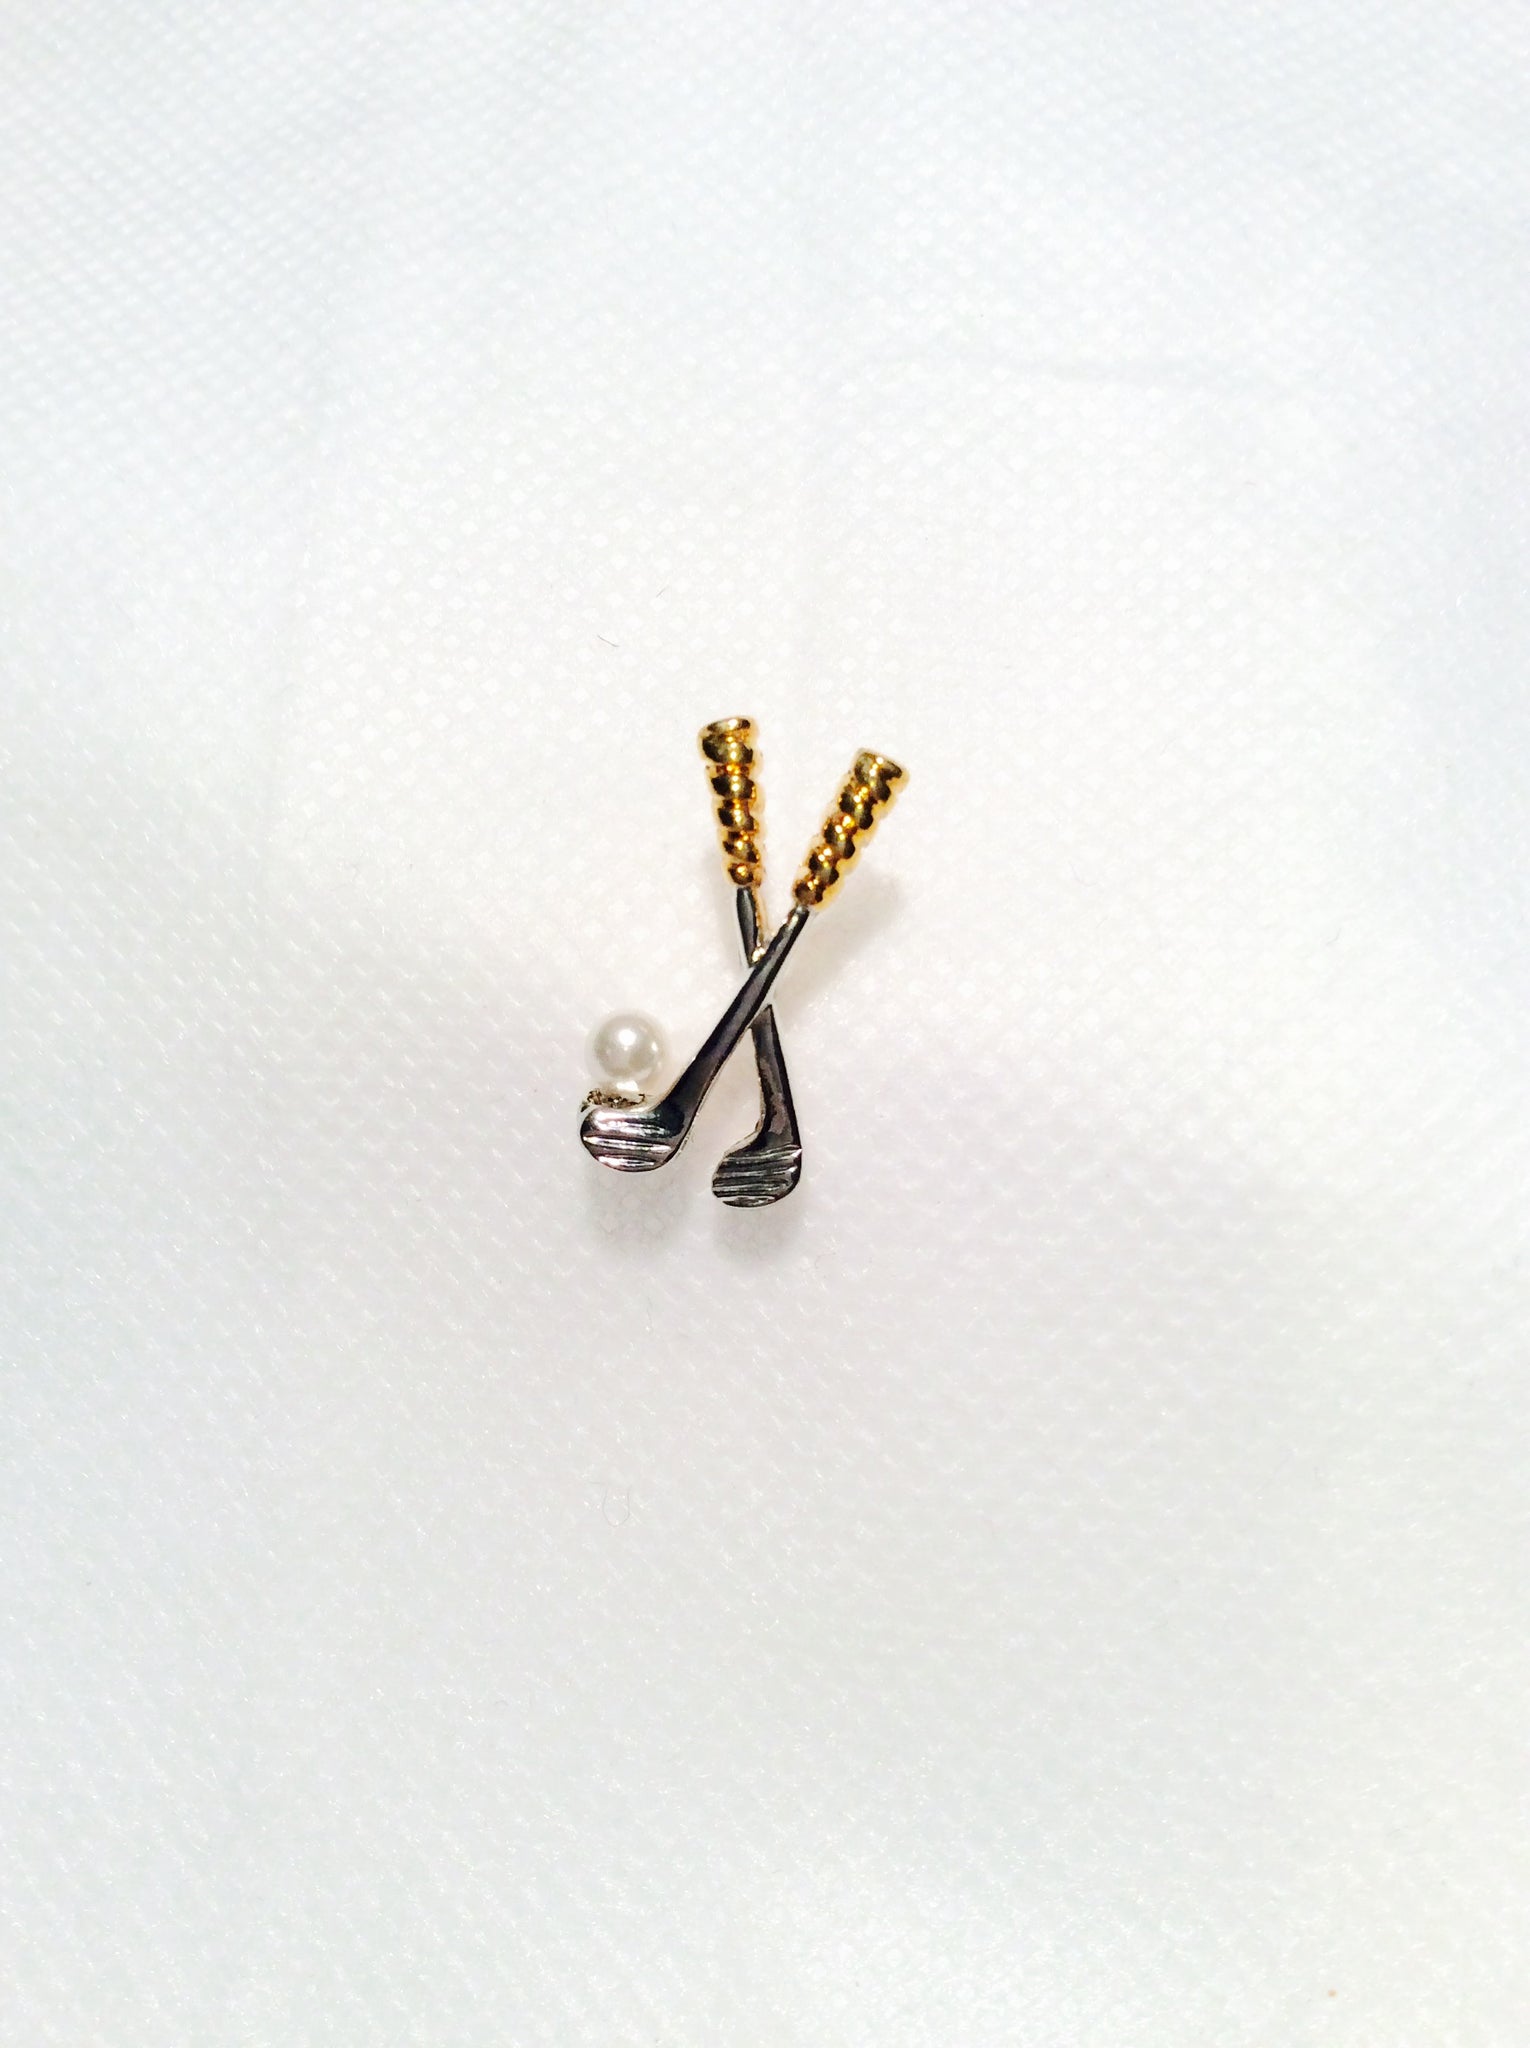 Golf Stick Tack Pin #38-4386